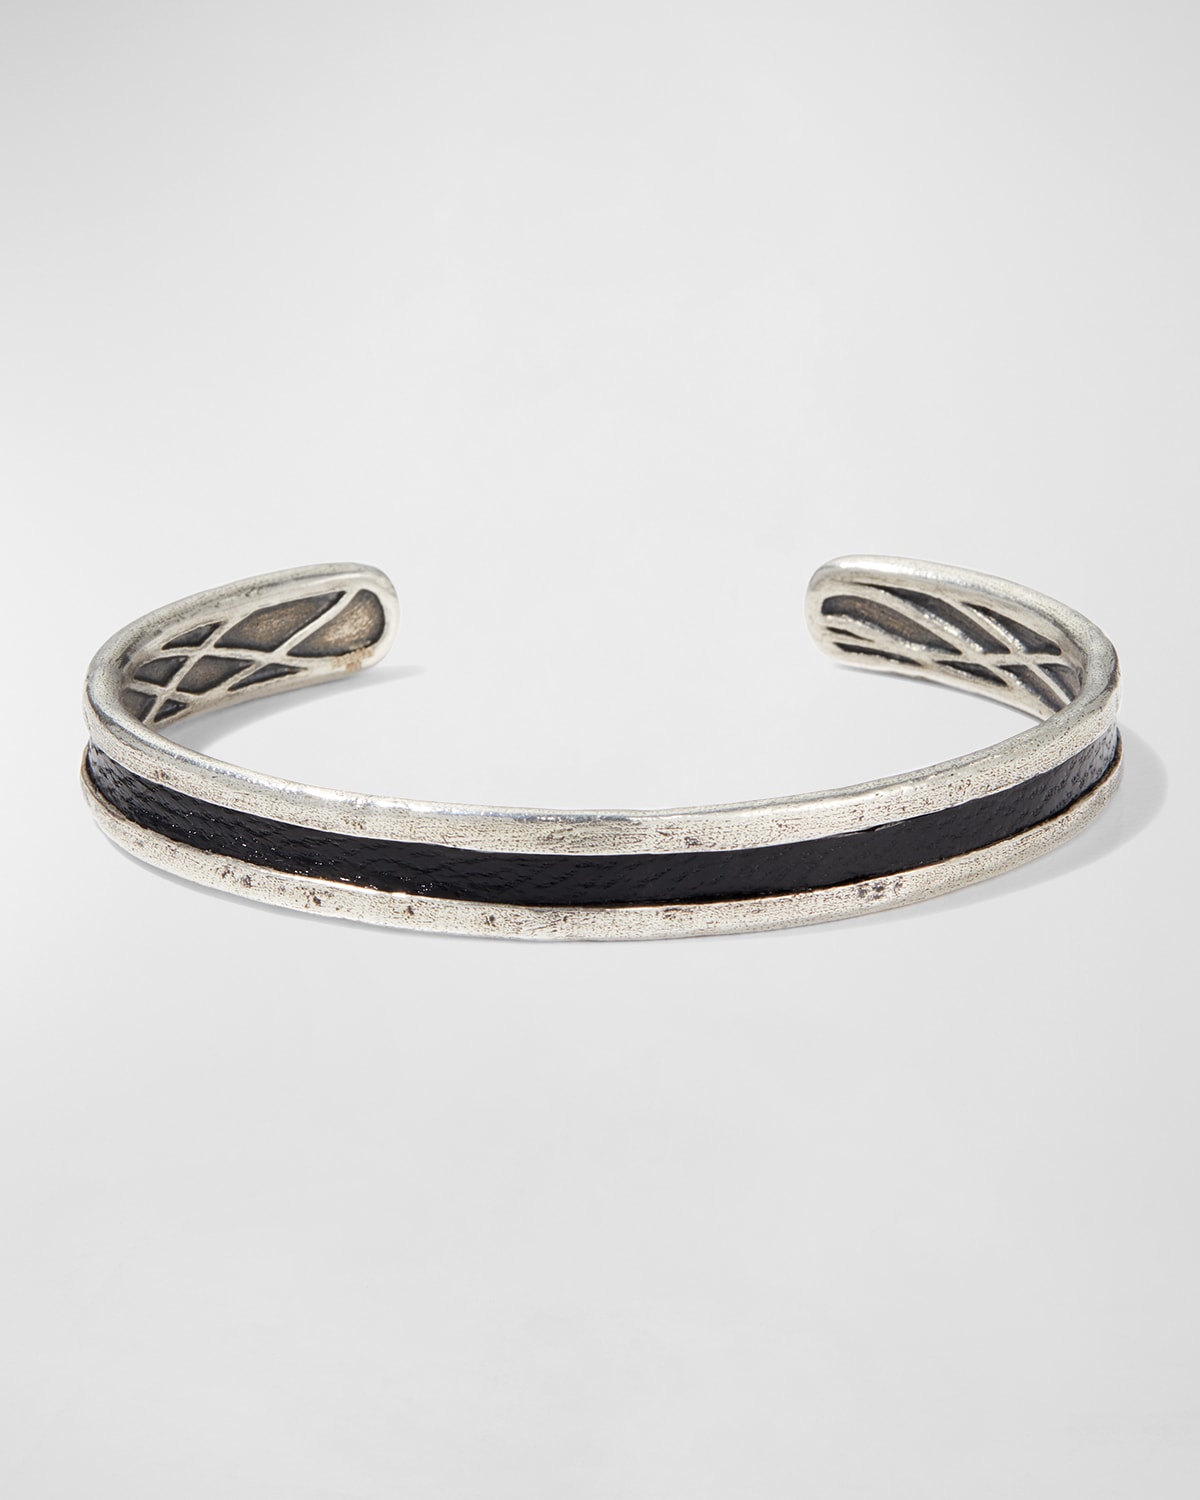 John Varvatos Men's Sterling Silver & Leather Cuff Bracelet